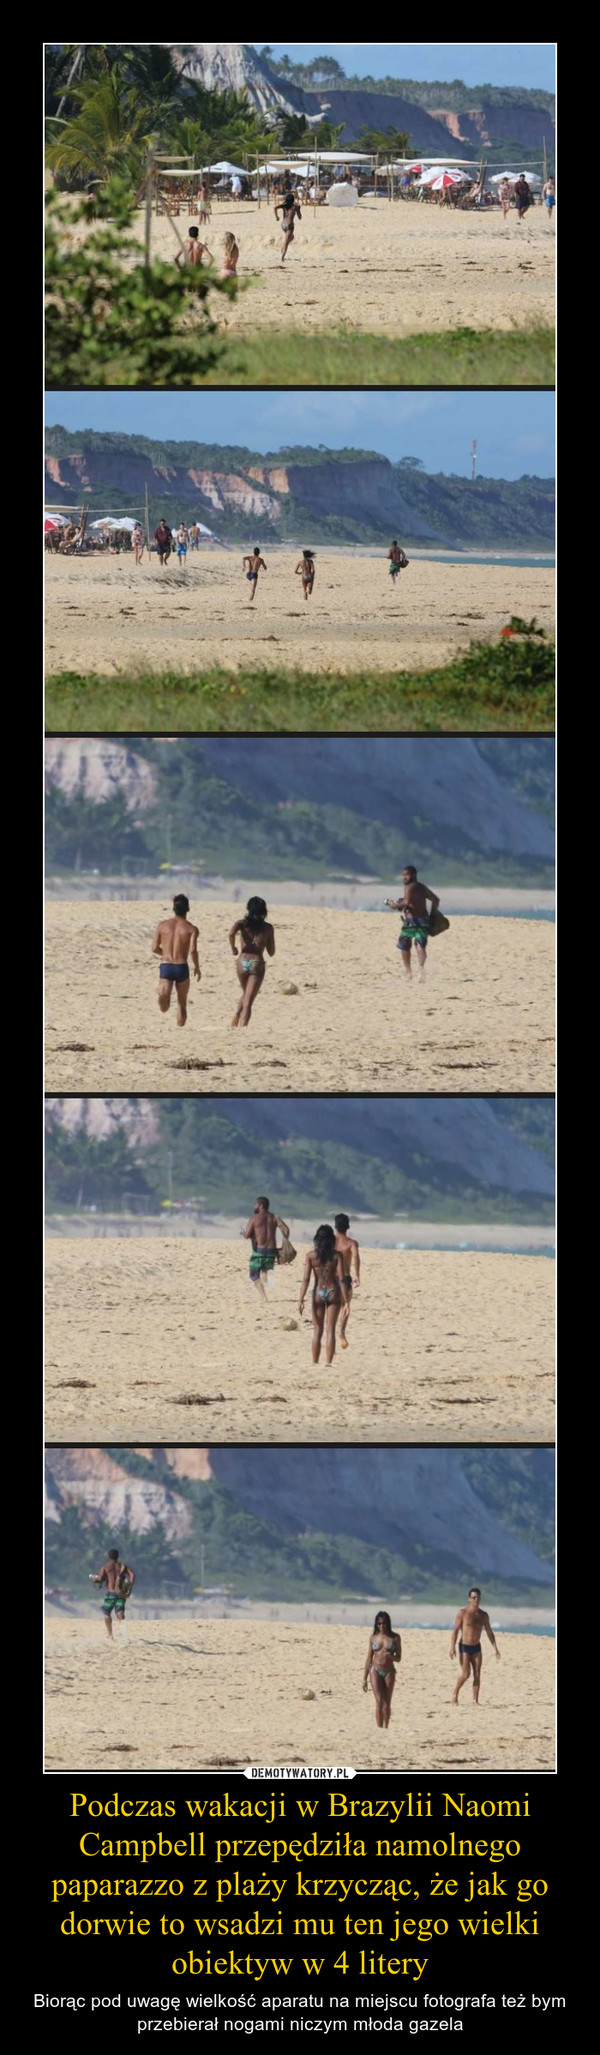 Podczas wakacji w Brazylii Naomi Campbell przepędziła namolnego paparazzo z plaży krzycząc, że jak go dorwie to wsadzi mu ten jego wielki obiektyw w 4 litery – Biorąc pod uwagę wielkość aparatu na miejscu fotografa też bym przebierał nogami niczym młoda gazela 